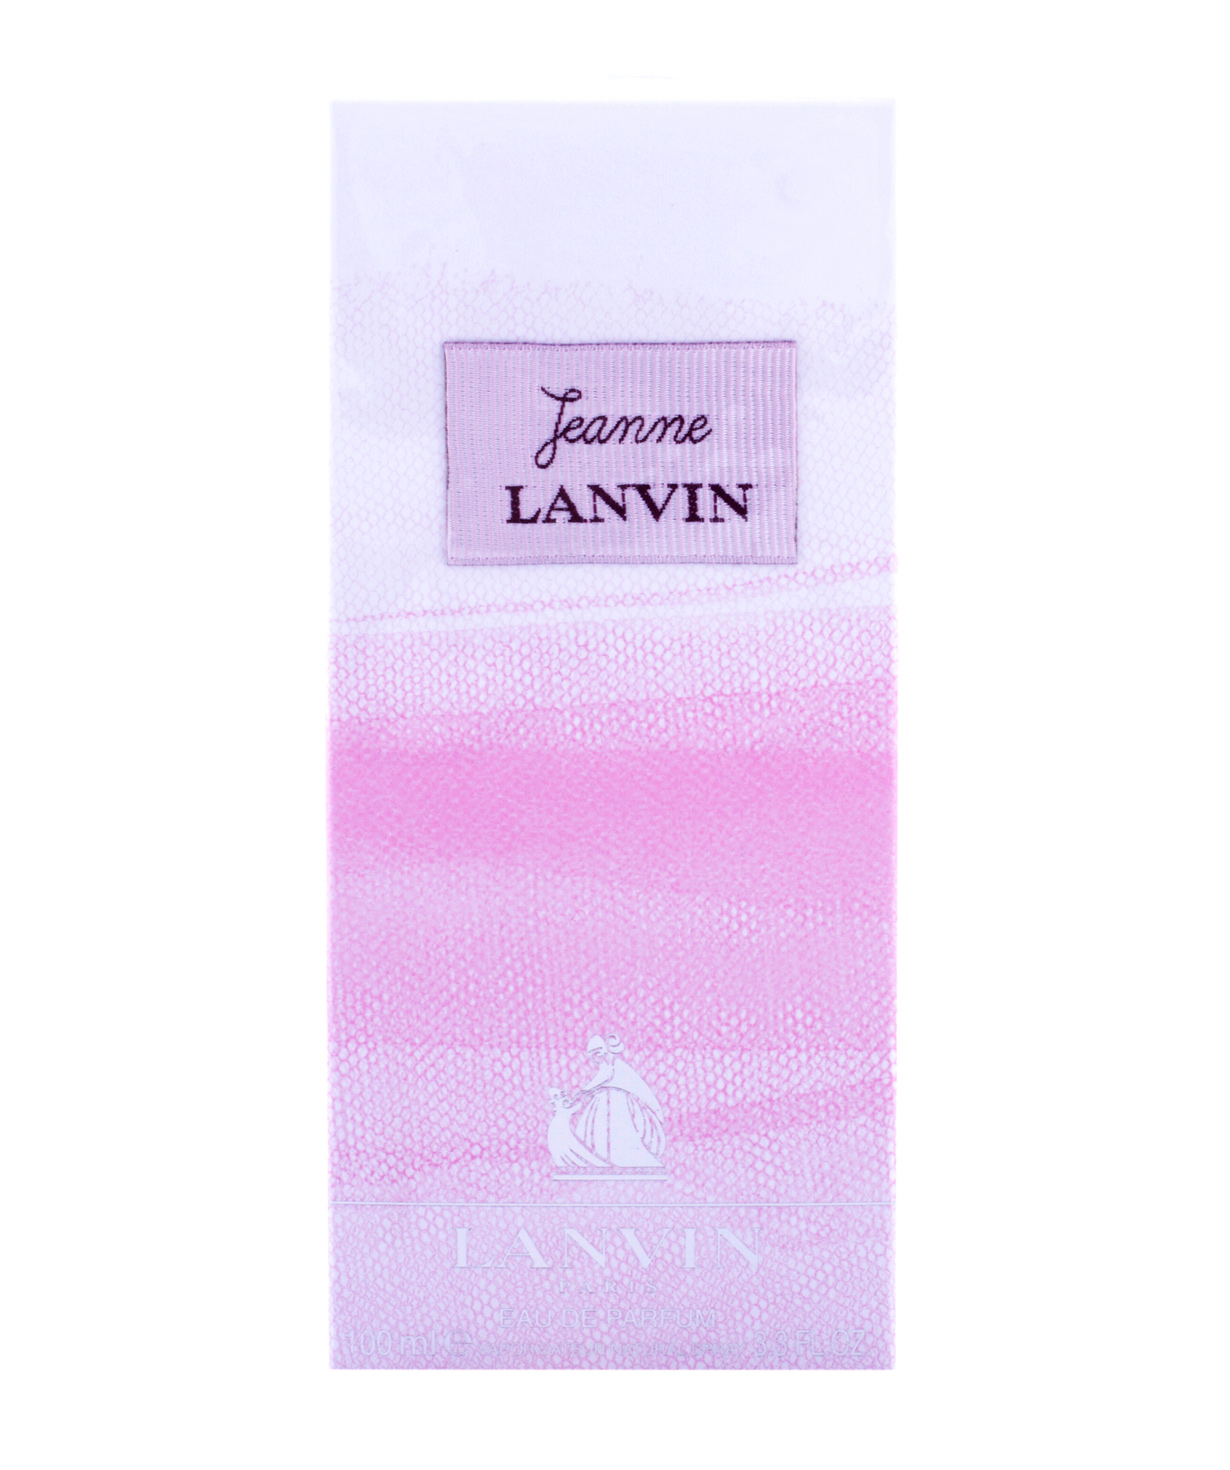 Perfume «Lanvin» Jeanne, for women, 100 ml